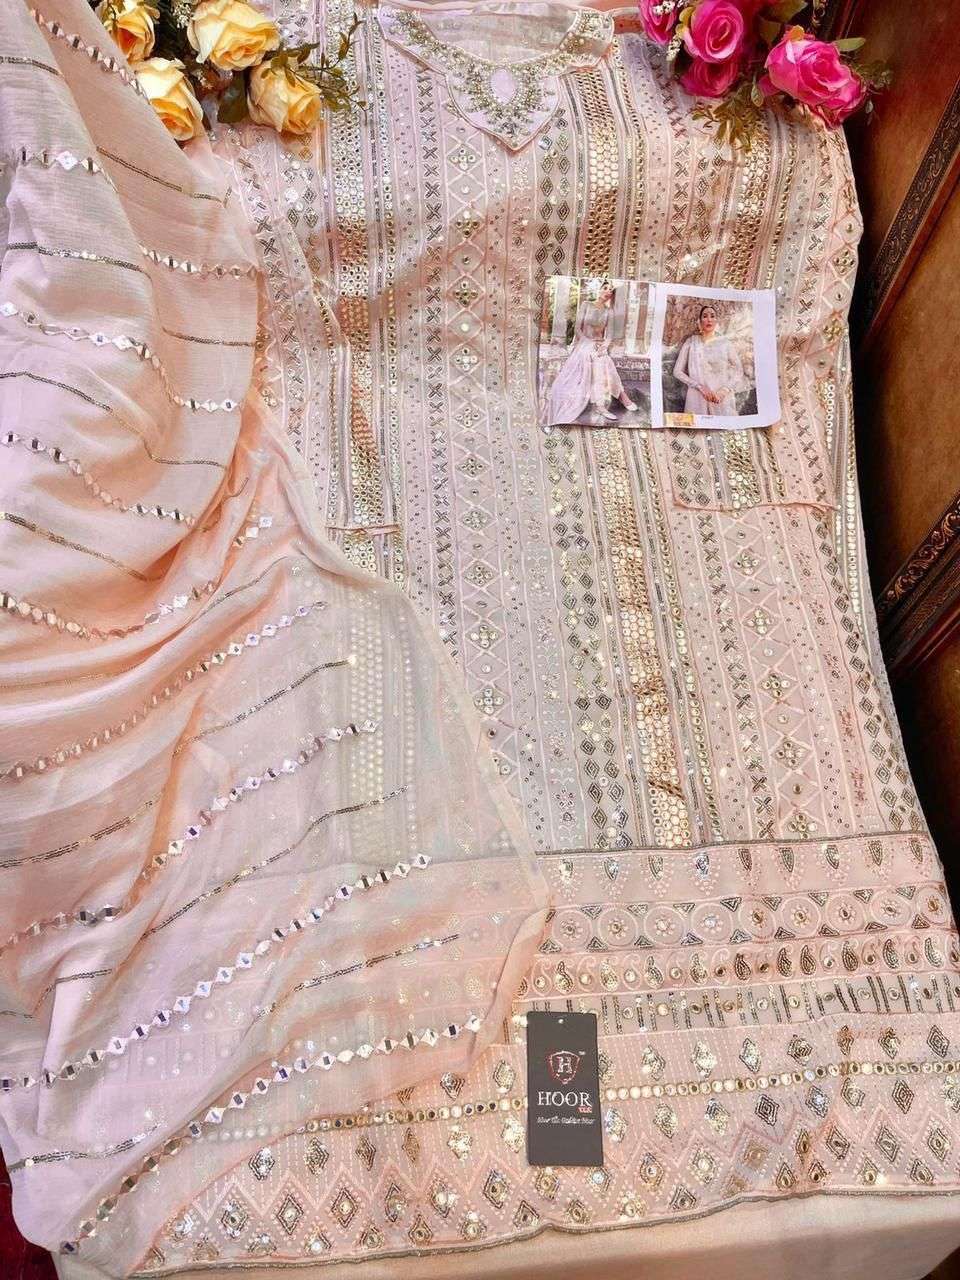 hoor tex 23007 embroidery heavy georgette pakistani salwar kameez at best price